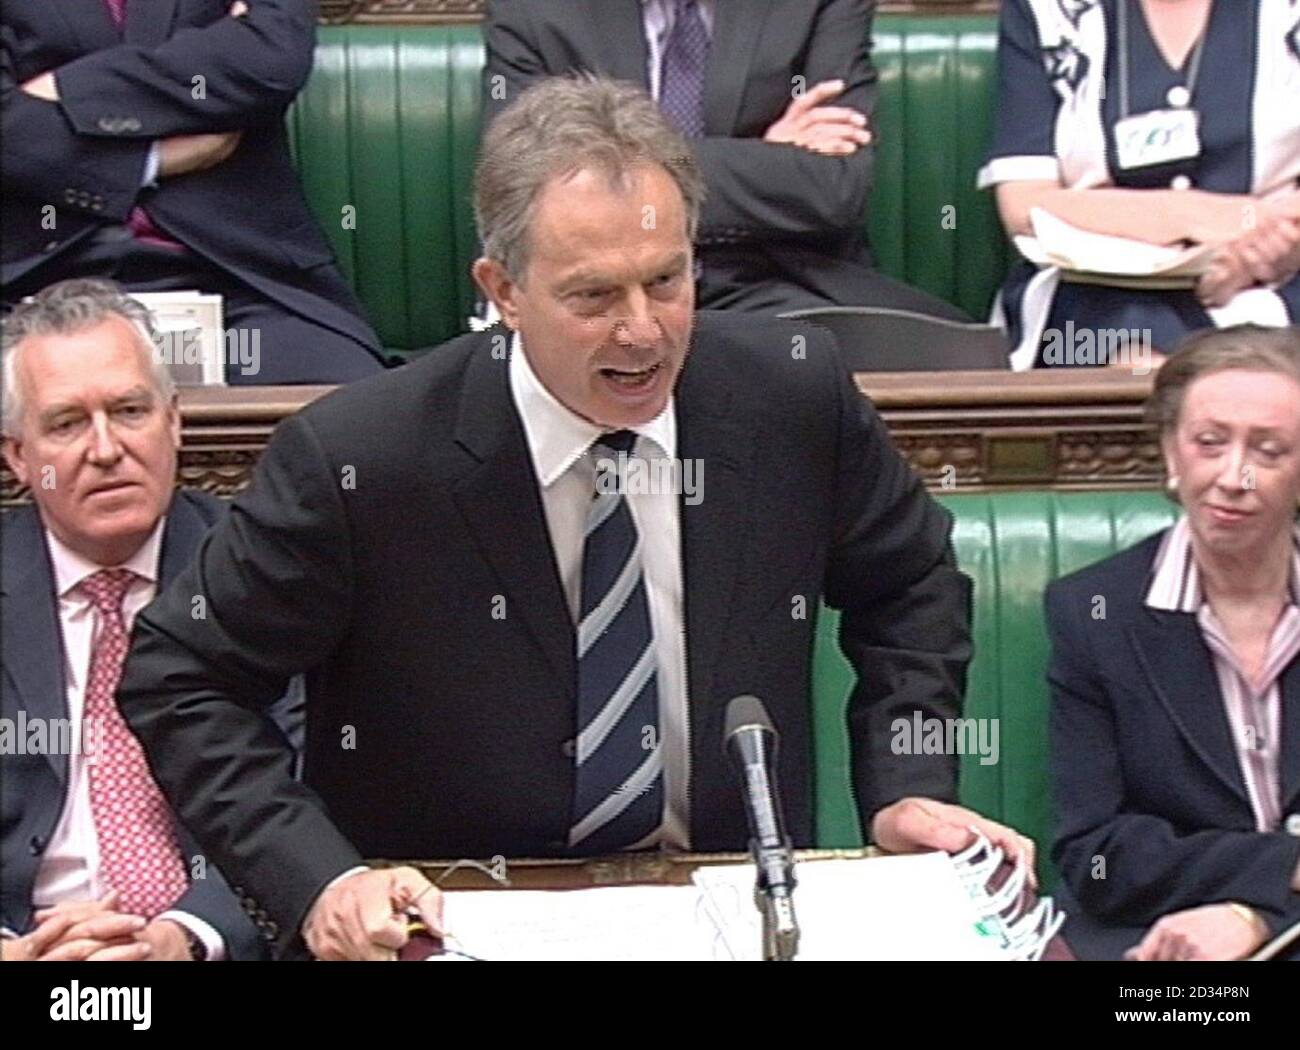 Le premier ministre Tony Blair prend la parole au cours des questions du premier ministre à la Chambre des communes, à Londres. Banque D'Images